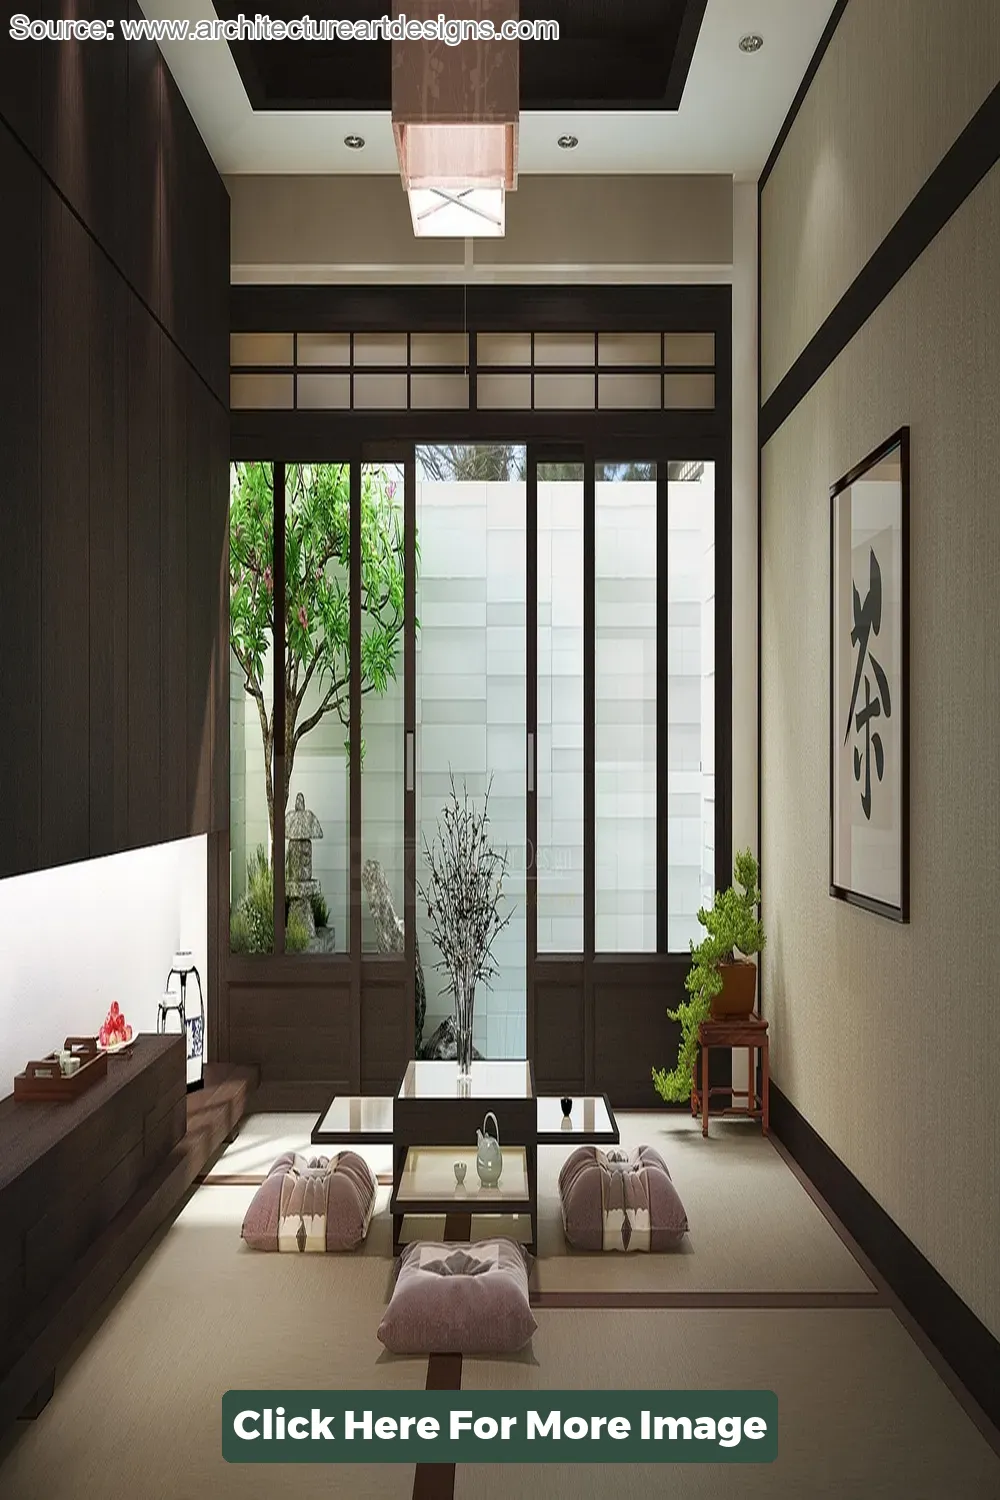 Top 40 Zen Interior Design Ideas - CivilDetail